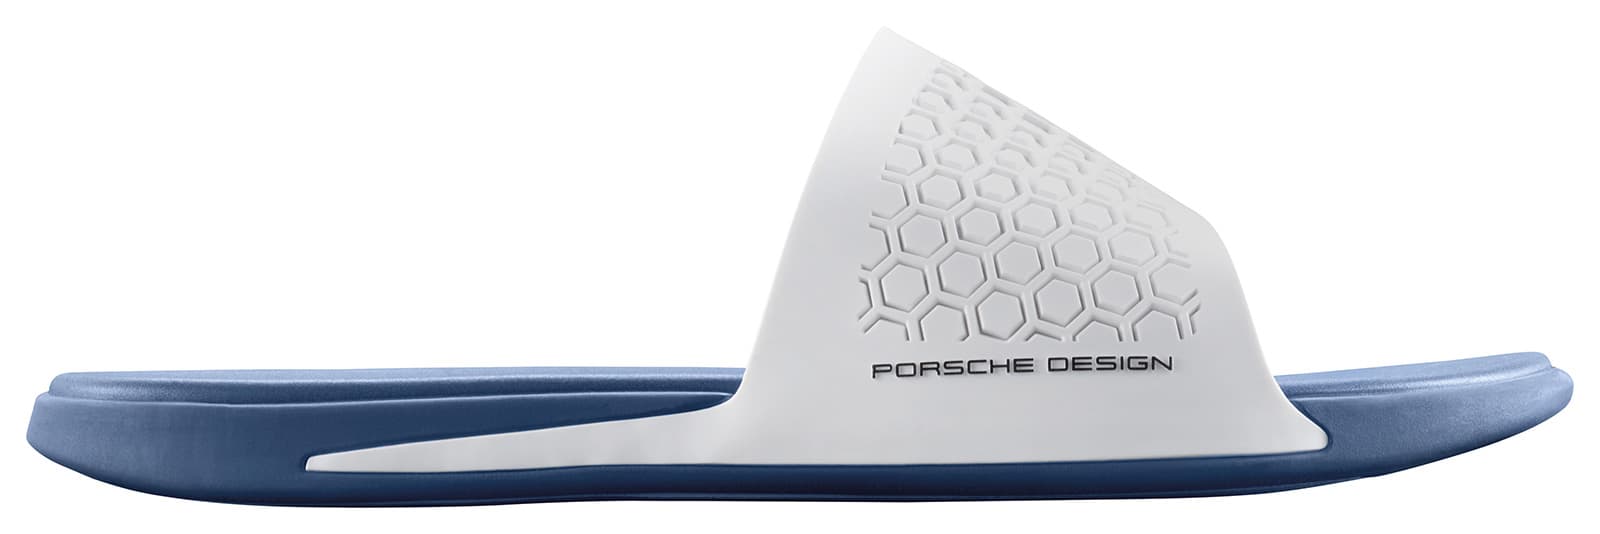 포르쉐 디자인 스포츠 by 아디다스 2017SS 싱글 피스 (2017SS Single Pieces, Porsche Design Sport by adidas) 3